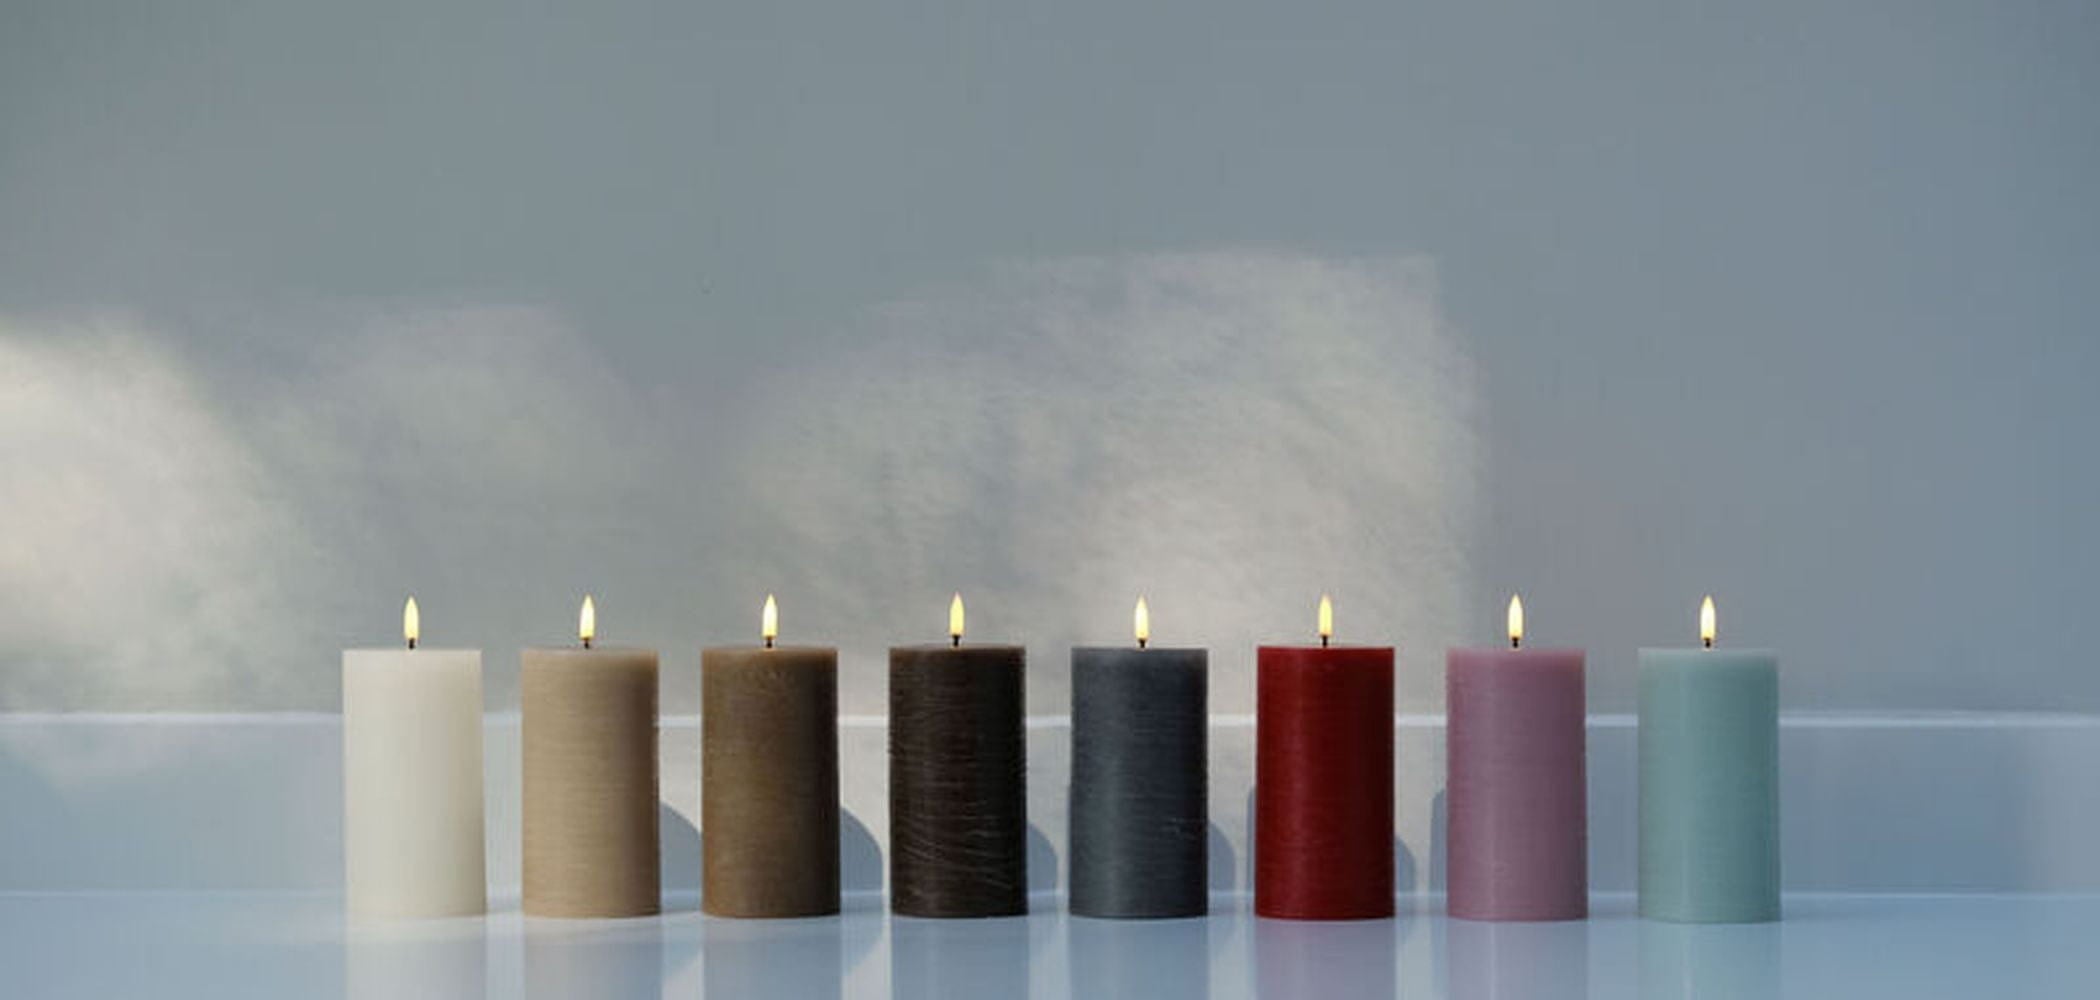 Uyuni Lighting Led Pillar Candle 3 D Flame 7,8x15 Cm, Vanilla Rustic